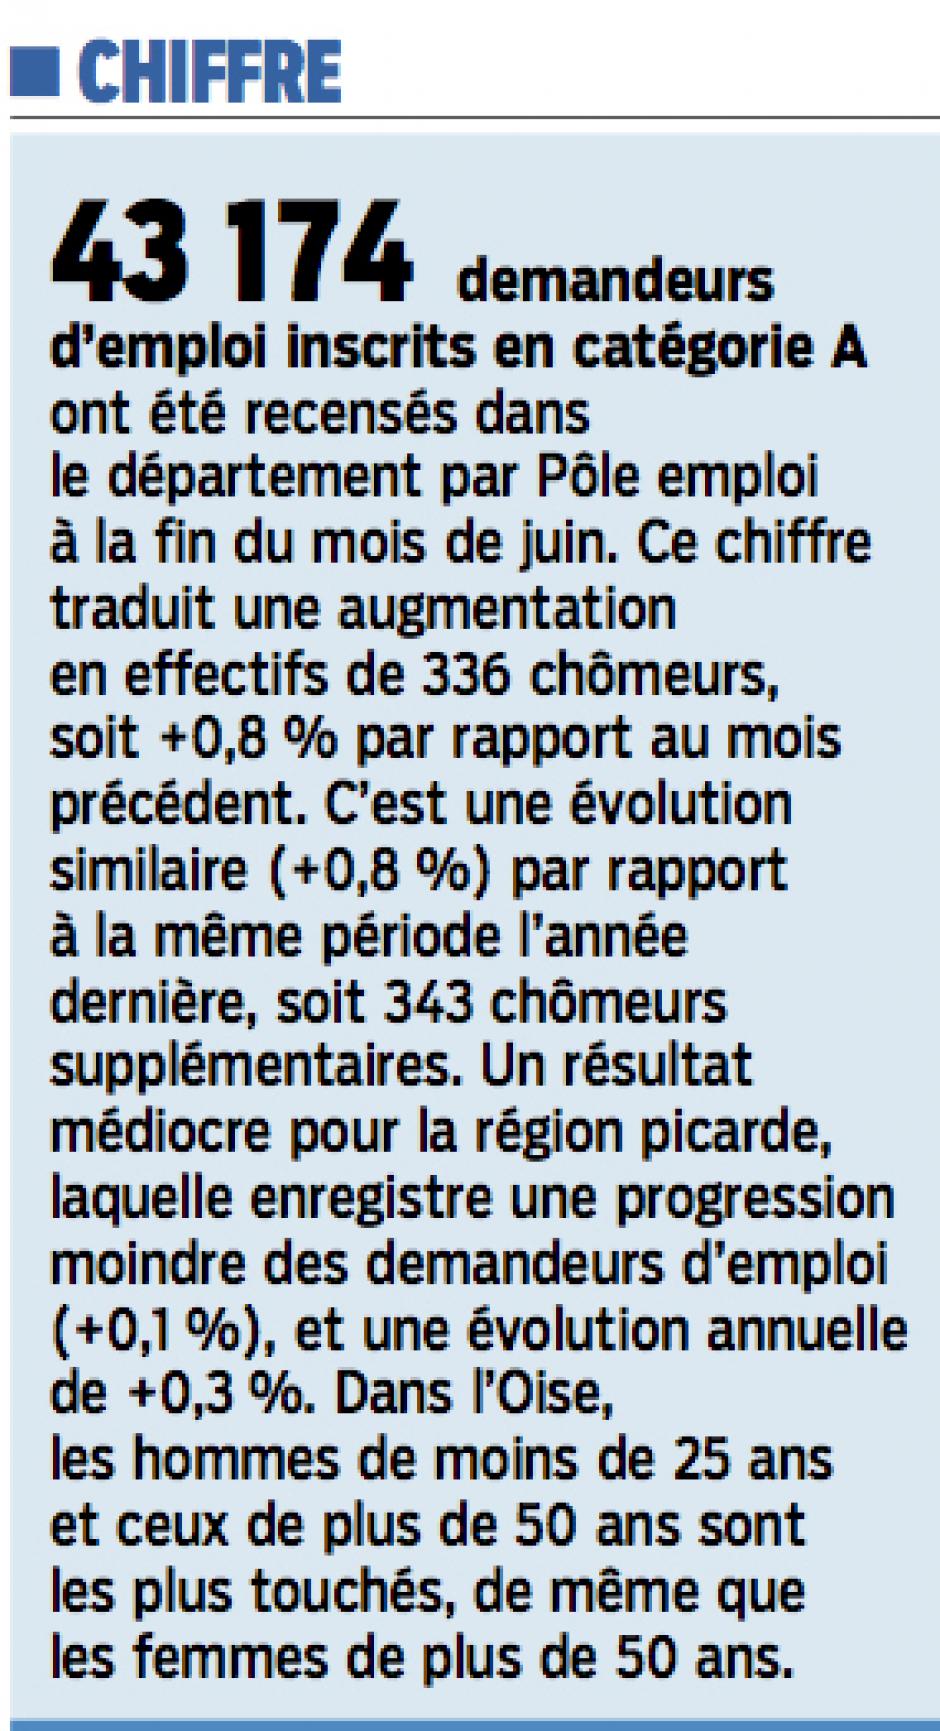 20140726-LeP-Oise-43 174 demandeurs d'emploi en catégorie A fin juin